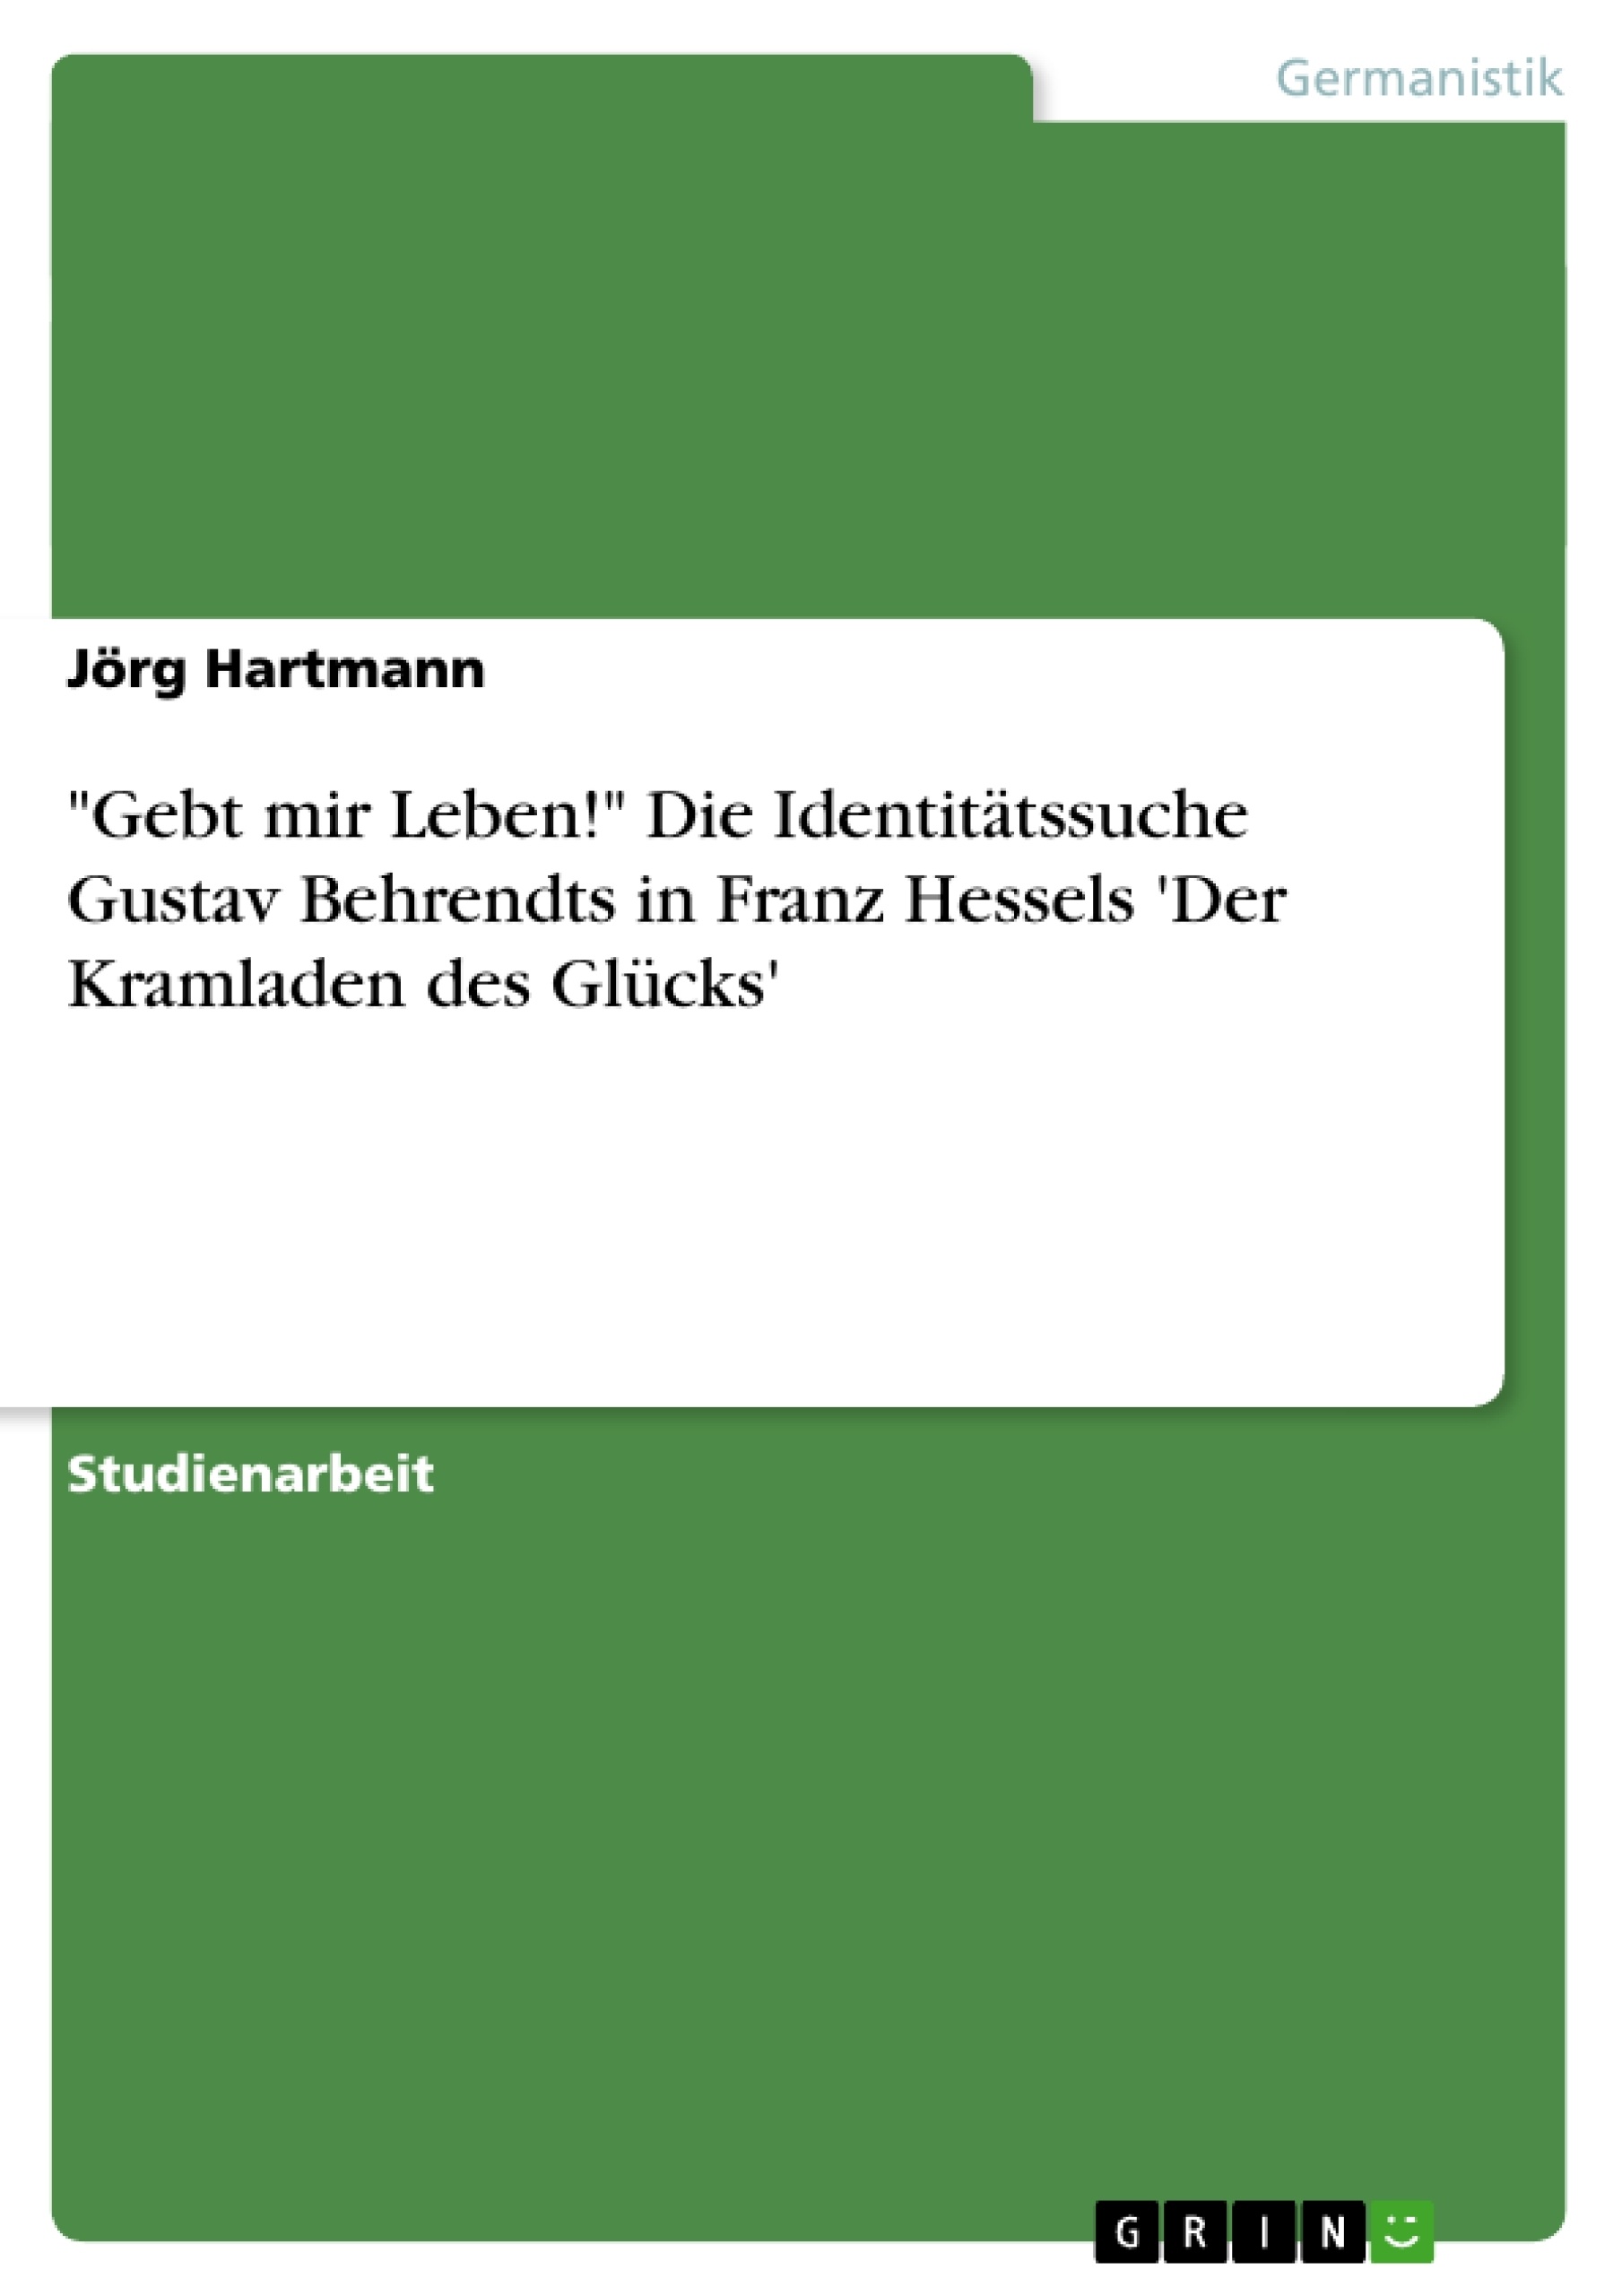 Title: "Gebt mir Leben!" Die Identitätssuche Gustav Behrendts in Franz Hessels 'Der Kramladen des Glücks'